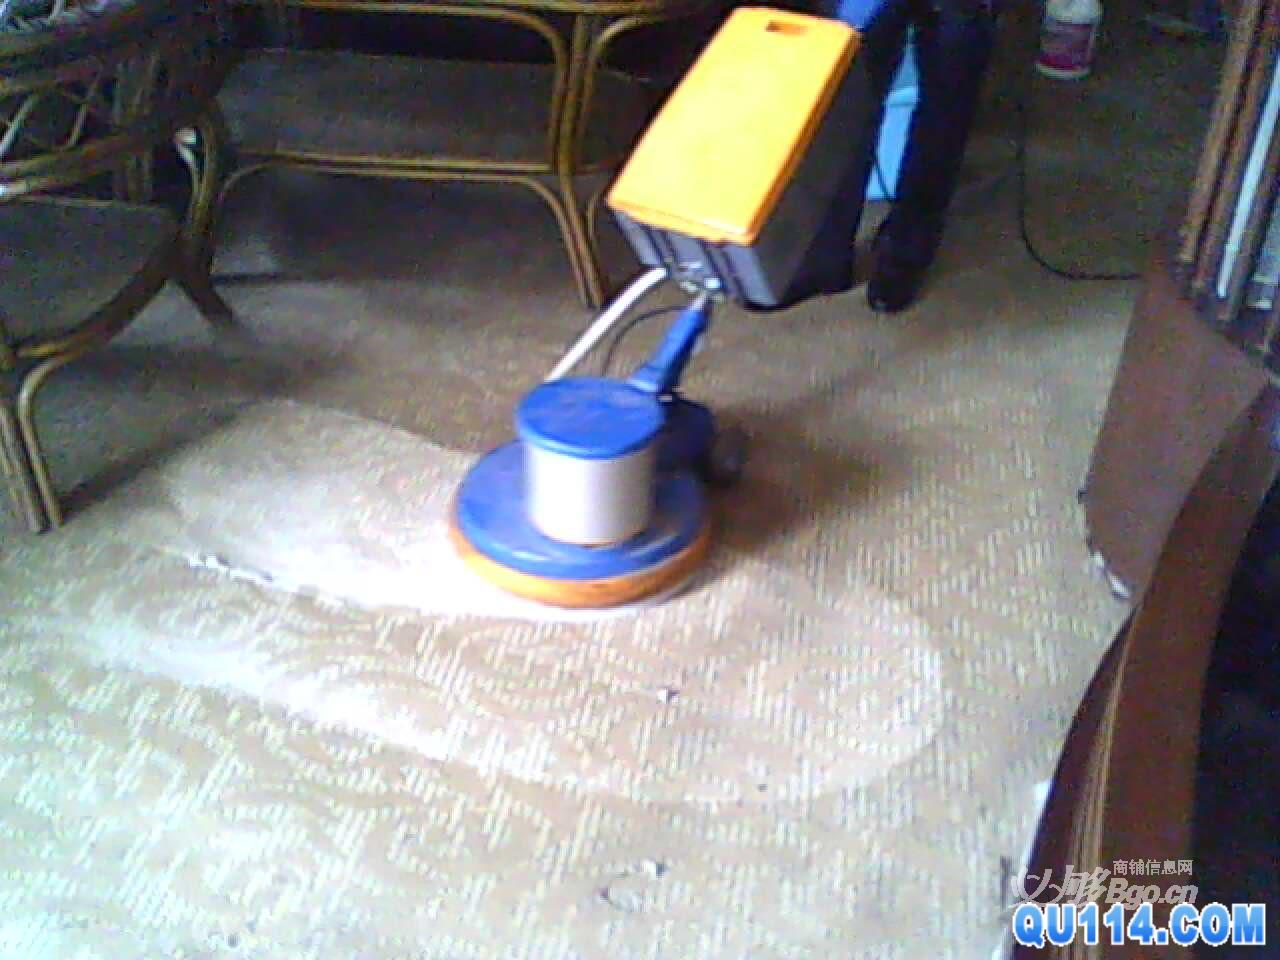 上海地毯杀虫公司 上海普陀区大渡河路地毯清洗公司51088357